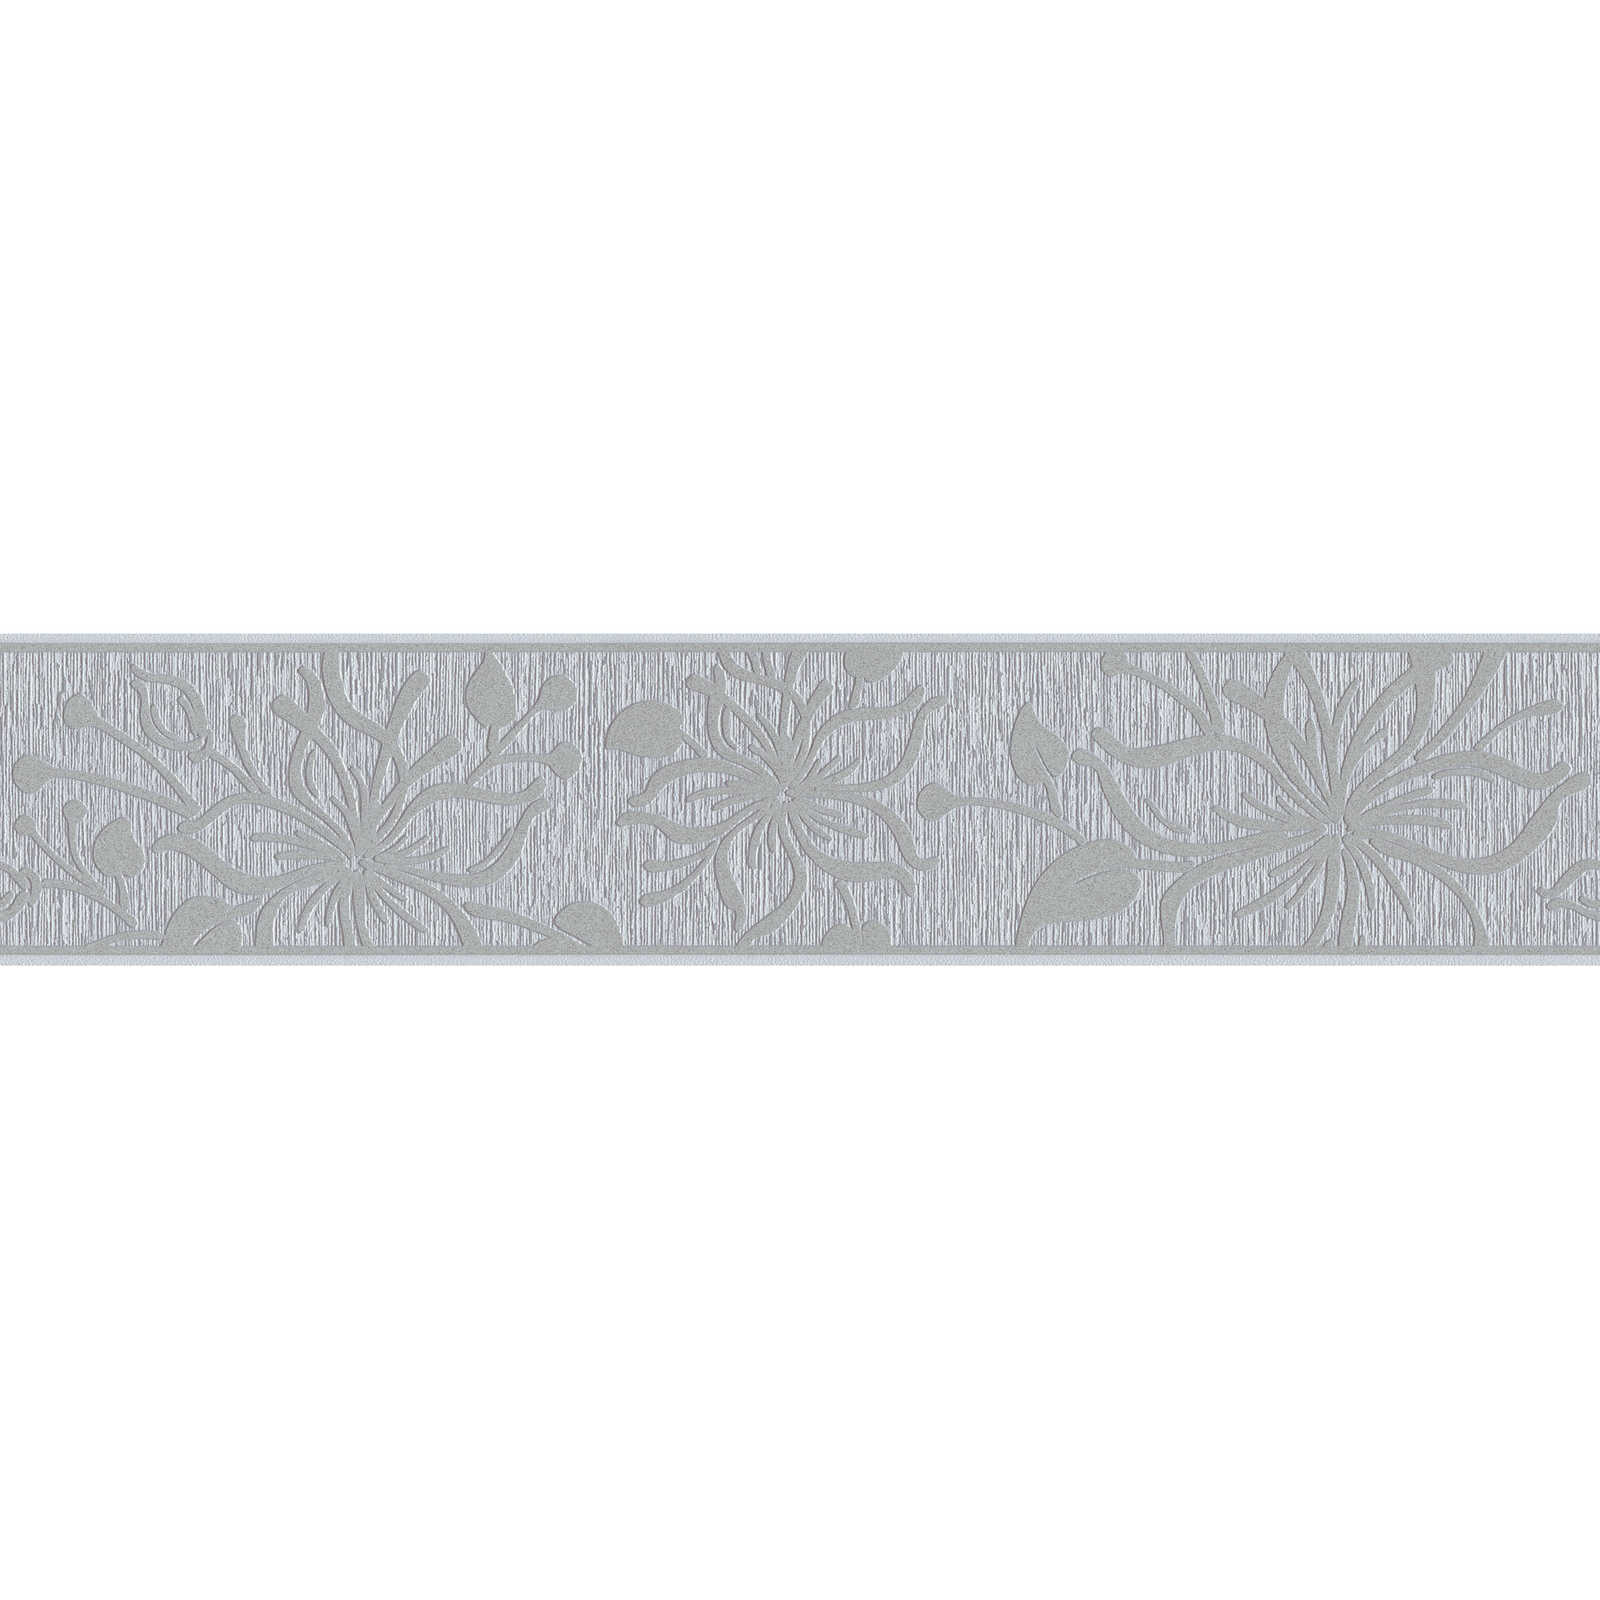         Silbermetallic Borte mit Blumenmuster & Strukturprägung
    